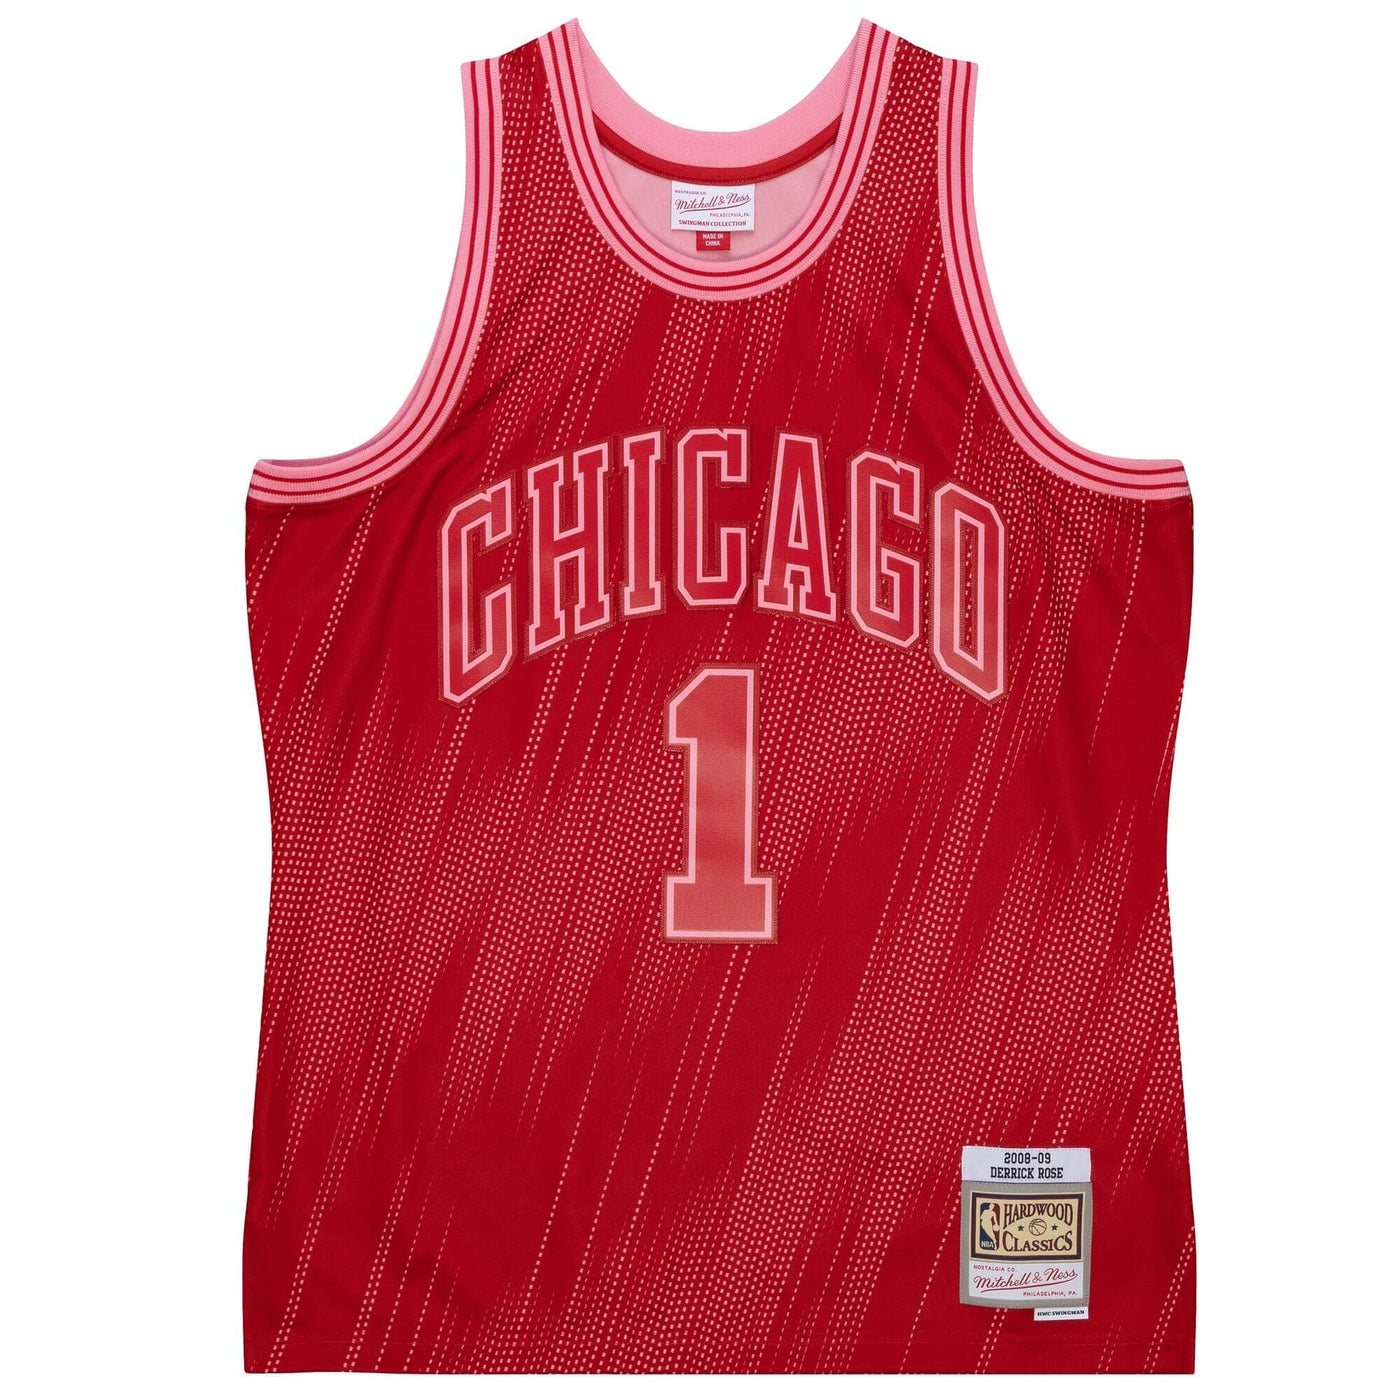 Derrick Rose Chicago Bulls 1 Jersey